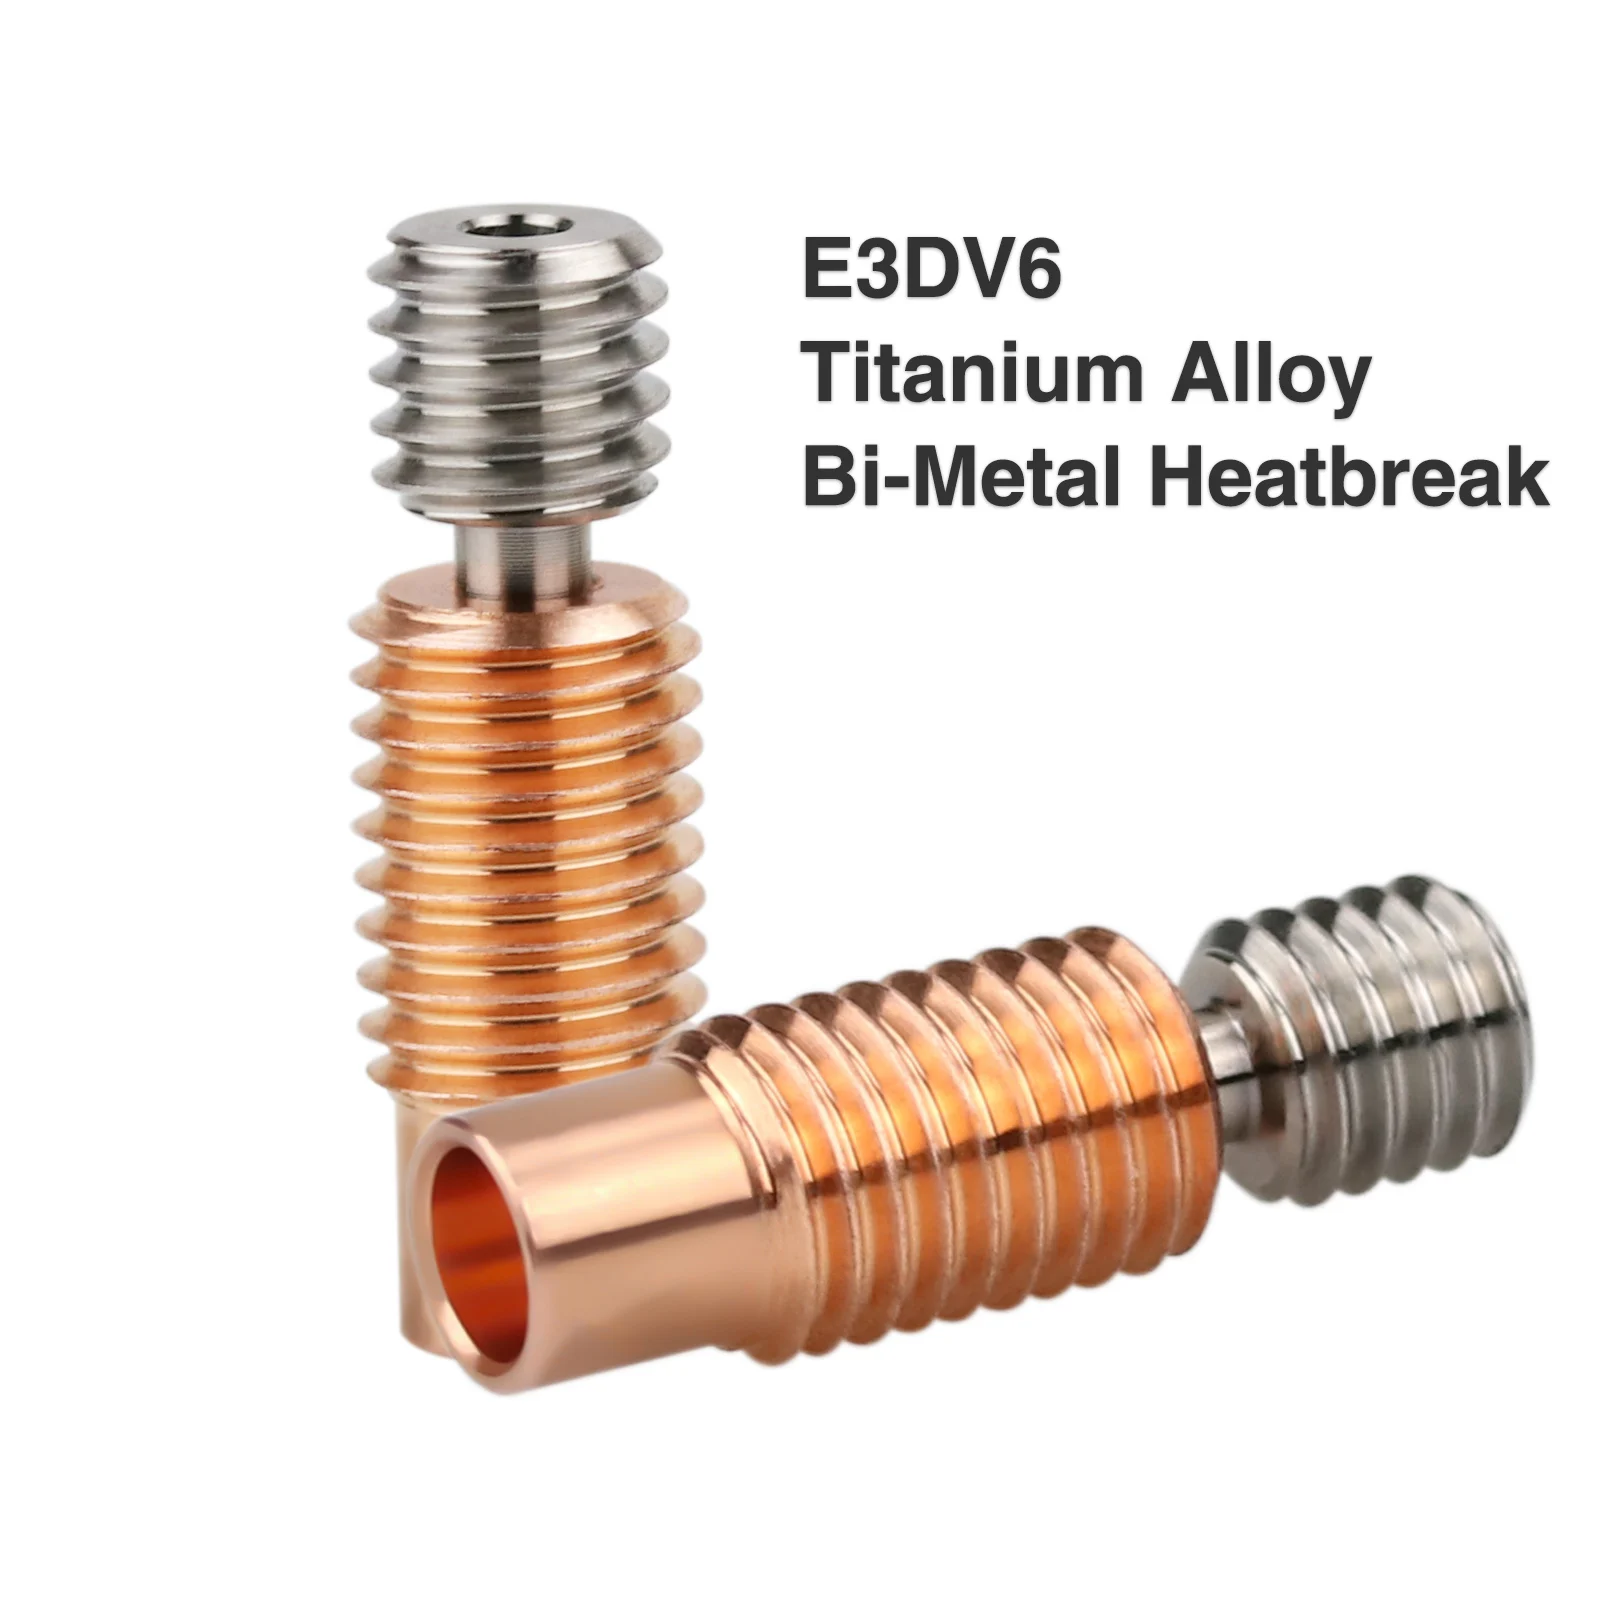 E3D V6 Bimetal Heatbreak Copper Titanium Upgrade Throats For Artillery Sidewinder X1 X2/Genius, Genius Pro 3D Printer  V6 Throat полностью металлическая насадка для 3d принтера e3d v6 насадка из титанового сплава и меди для нагревательного блока e3d v6 1 75 мм